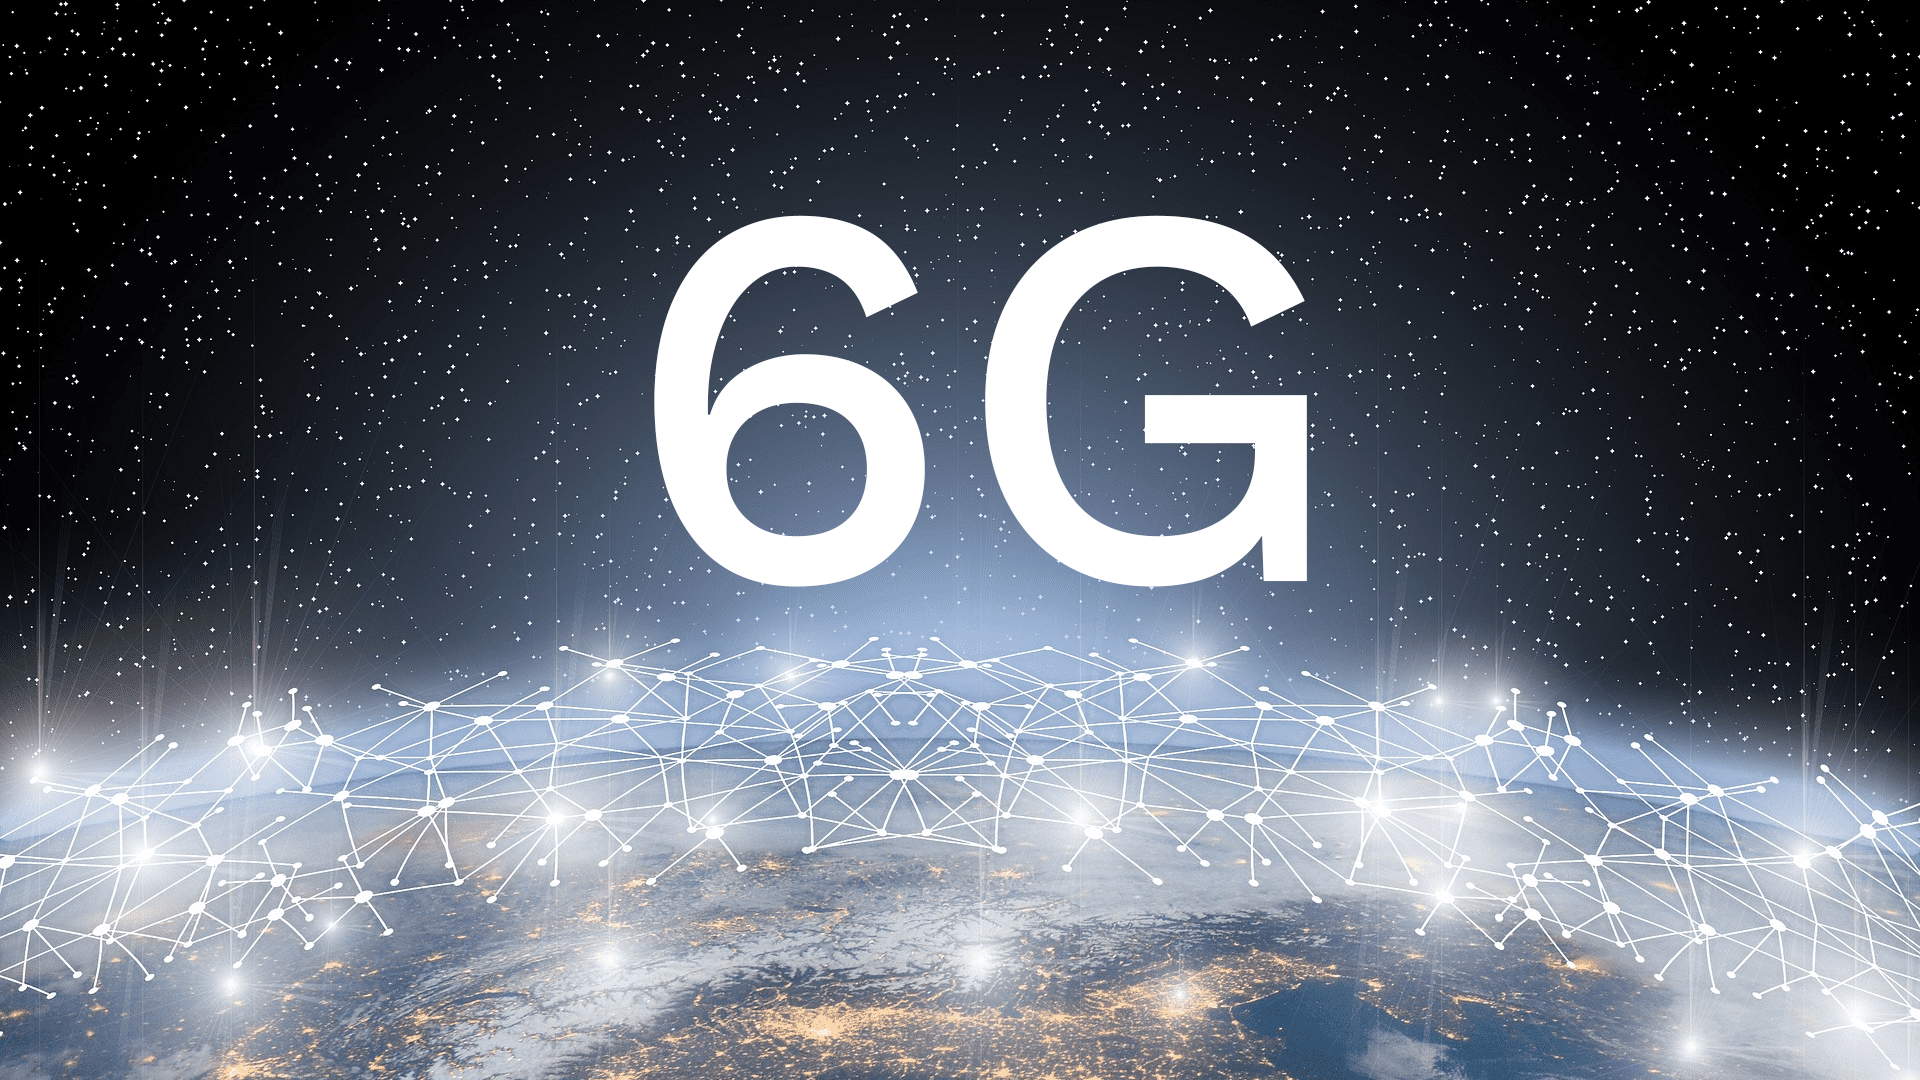 Mạng 6G sẽ có tốc độ mạng nhanh hơn, độ trễ thấp, nhiều băng thông